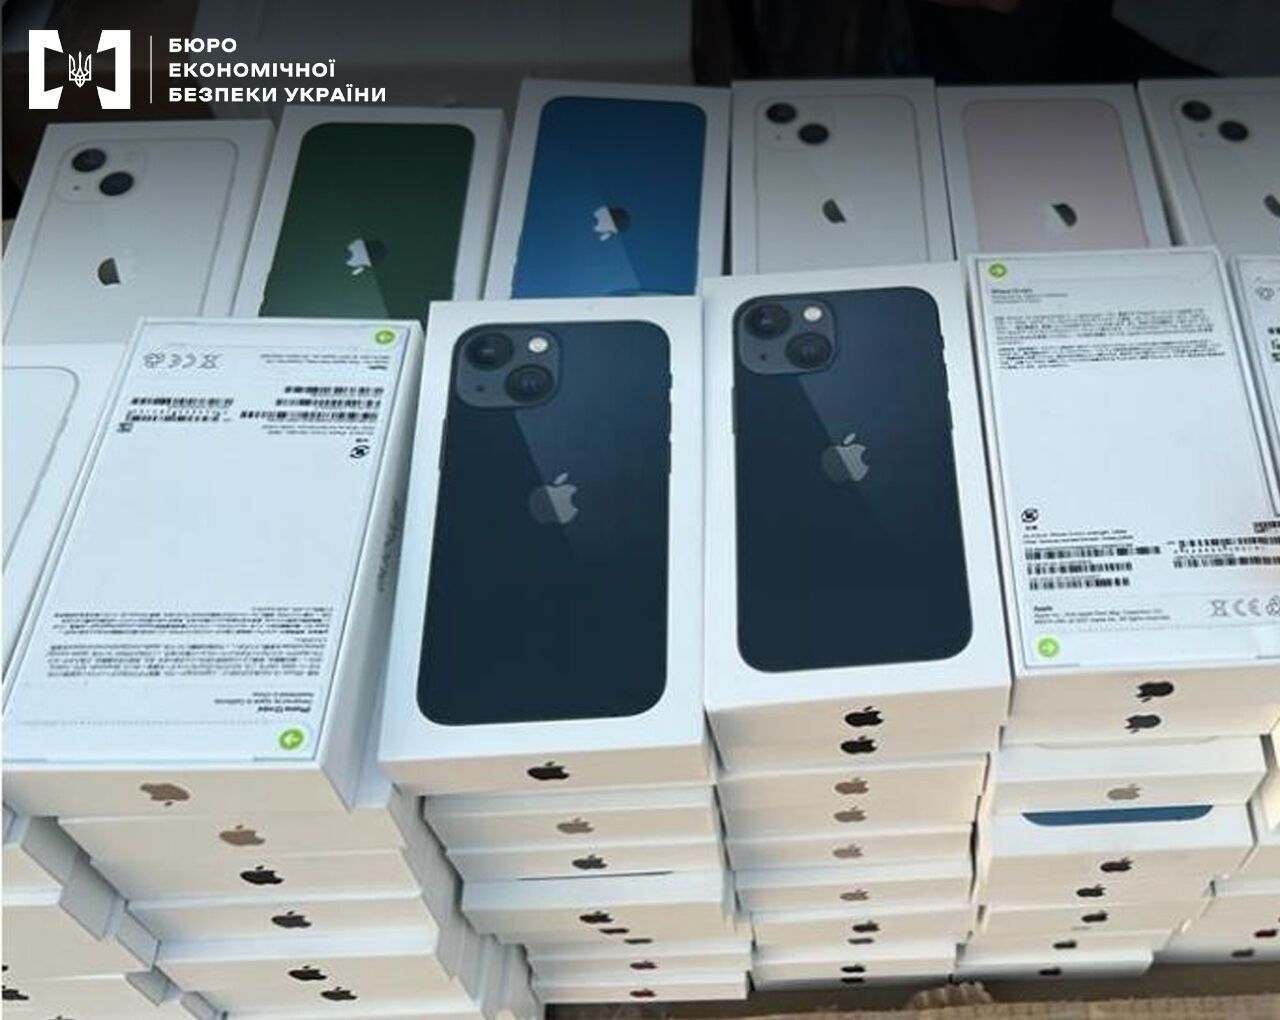 Контрабанда техники Apple в Украине: дело о "ничейных смартфонах" направили в суд